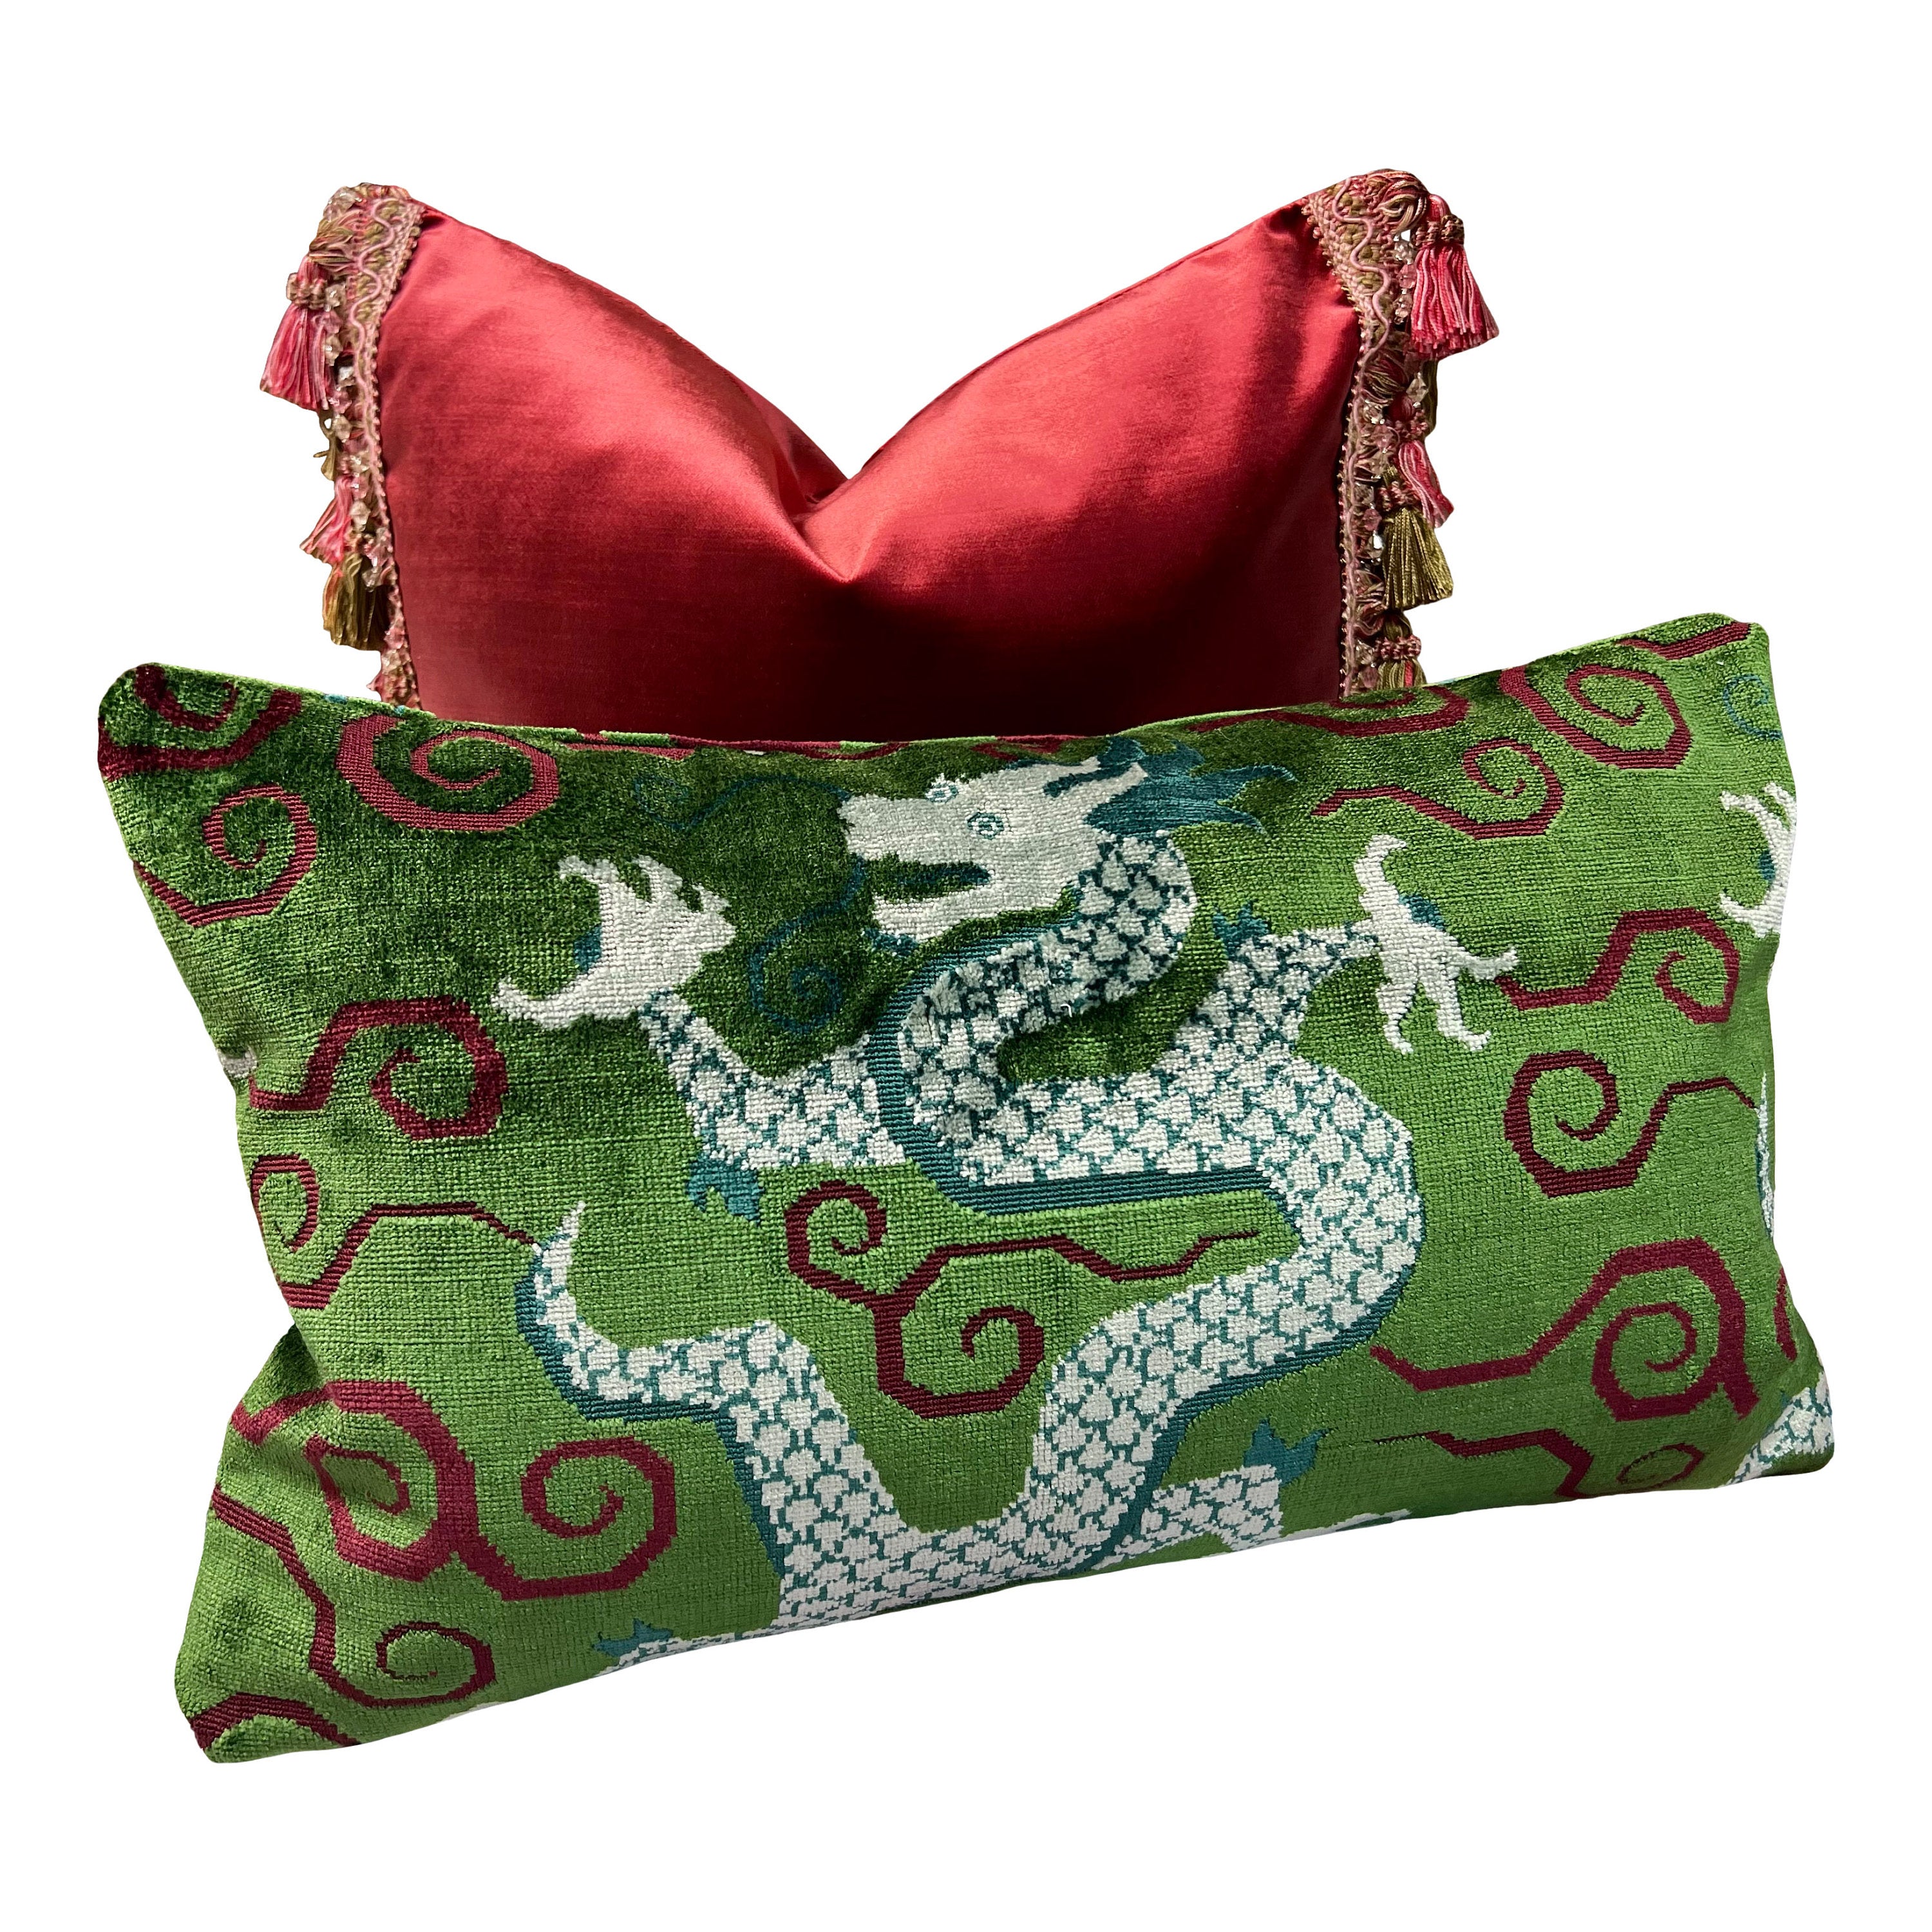 Designer Velvet Pillow in Ruby Red Color with Tassel Trim. Designer Velvet Pillows, High End Pillows, Navy Accent Lumbar Pillow Velvet Sham